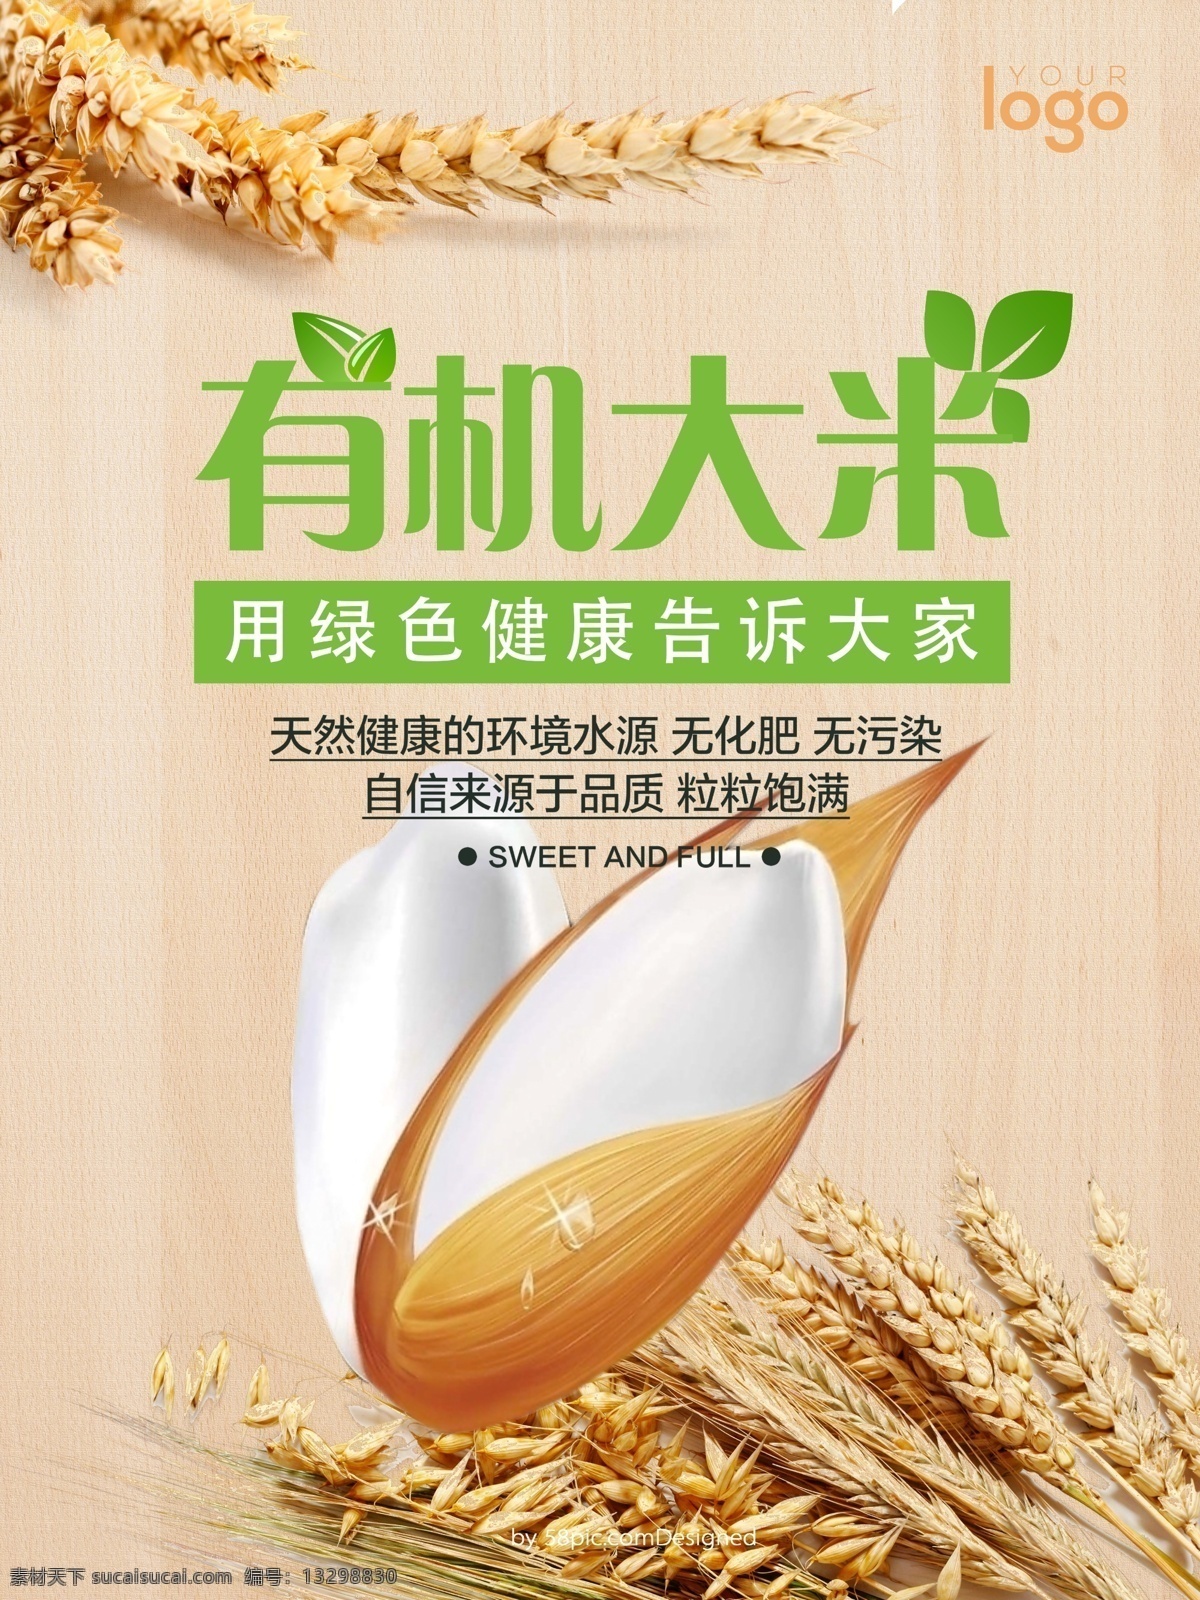 有机 大米 营养 有机大米 海报 健康 绿色食品 木纹 稻子